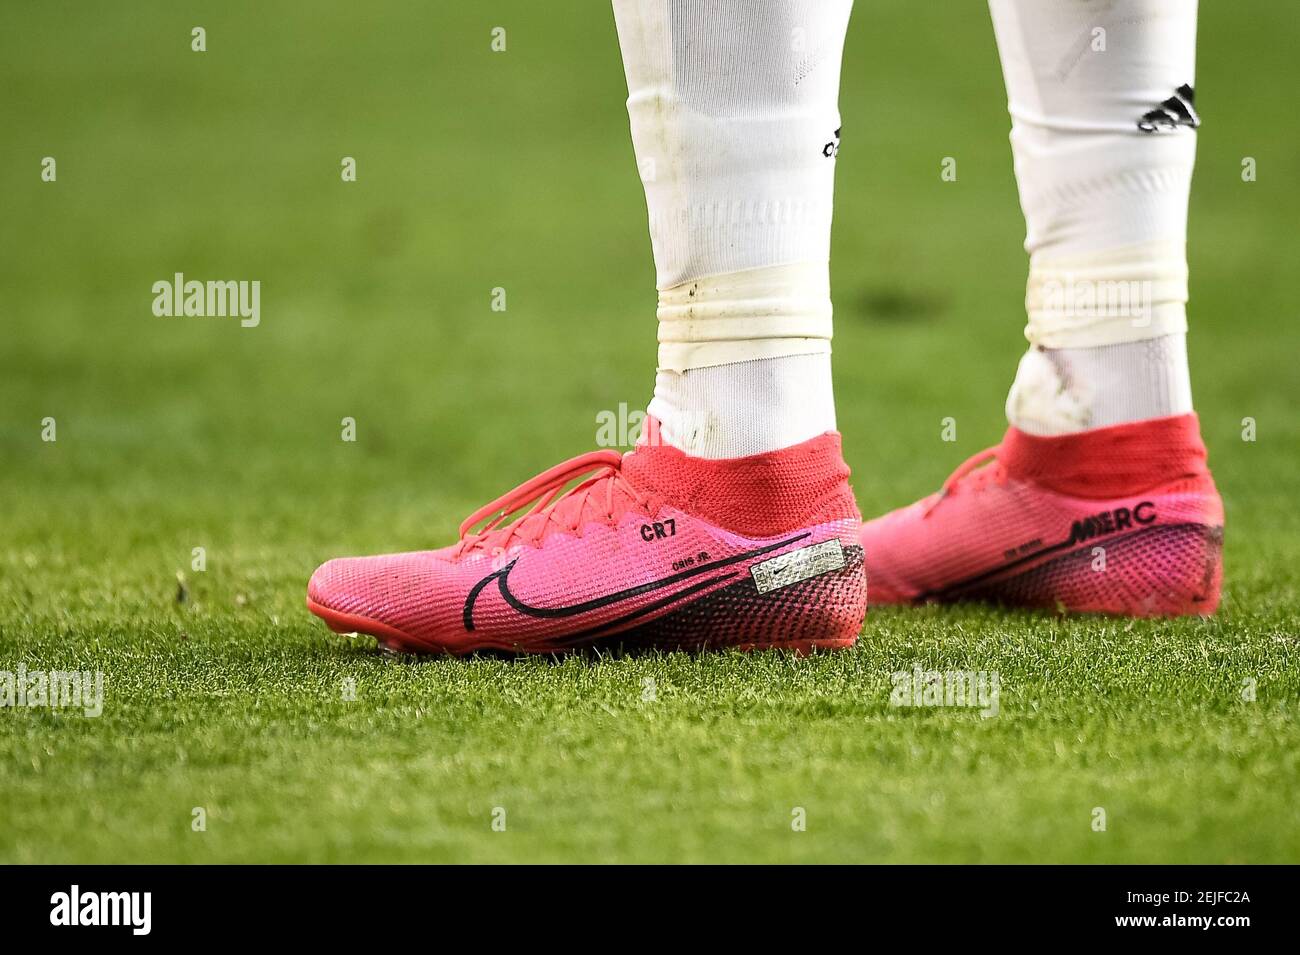 TURIN, ITALIEN - 02. Februar 2020: Die Nike Schuhe von Cristiano Ronaldo  von Juventus FC sind während